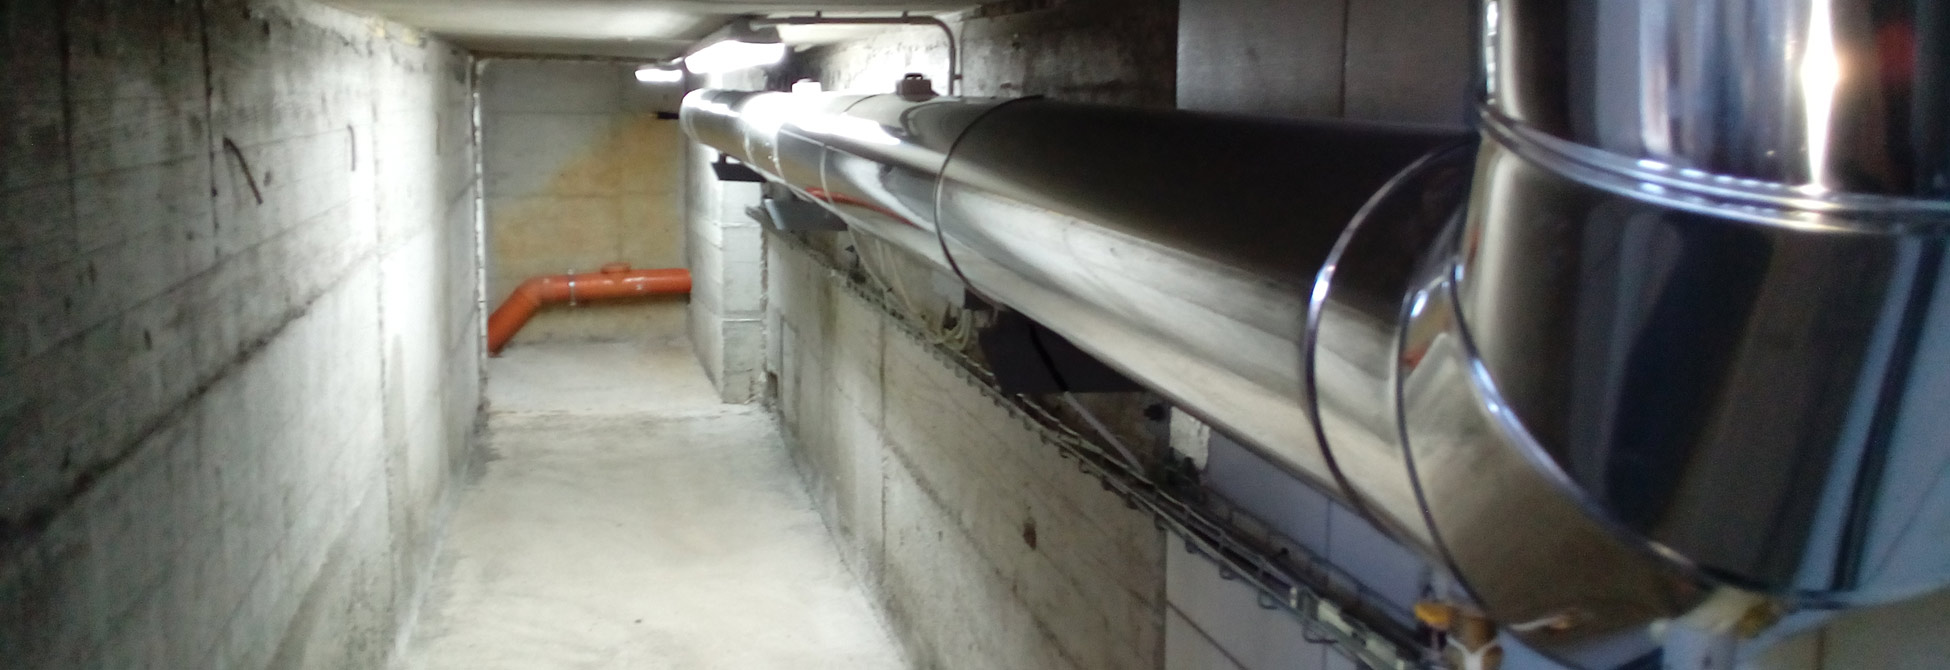 Ventilacioni kanali u podzemnim prostorijama